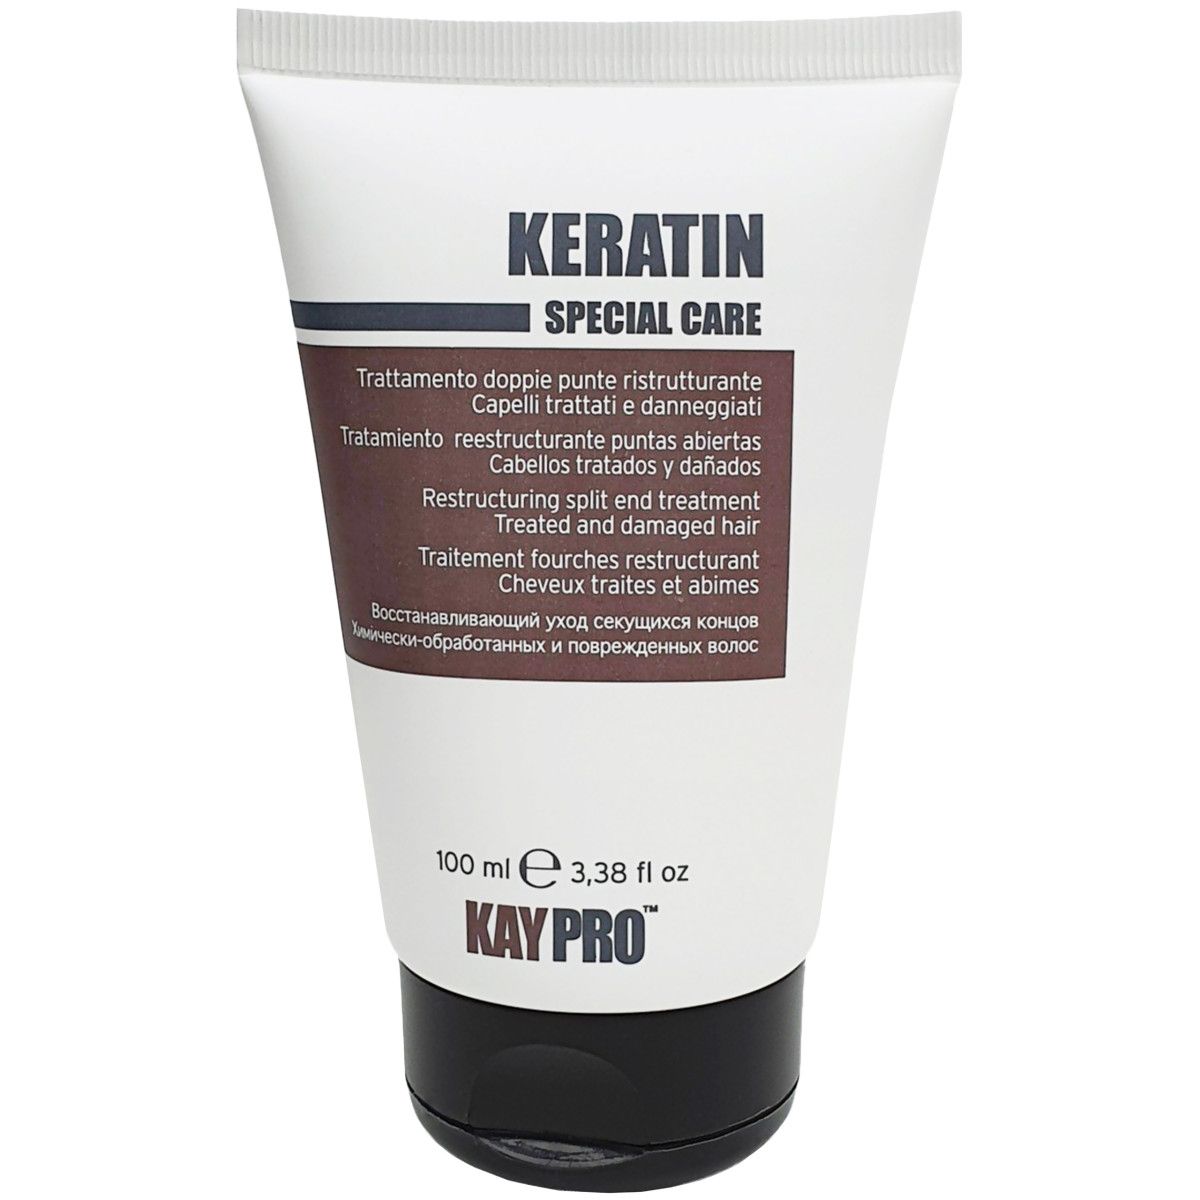 KayPro Keratin Special Care Split Ends - kuracja regeneracyjna do włosów, 100ml